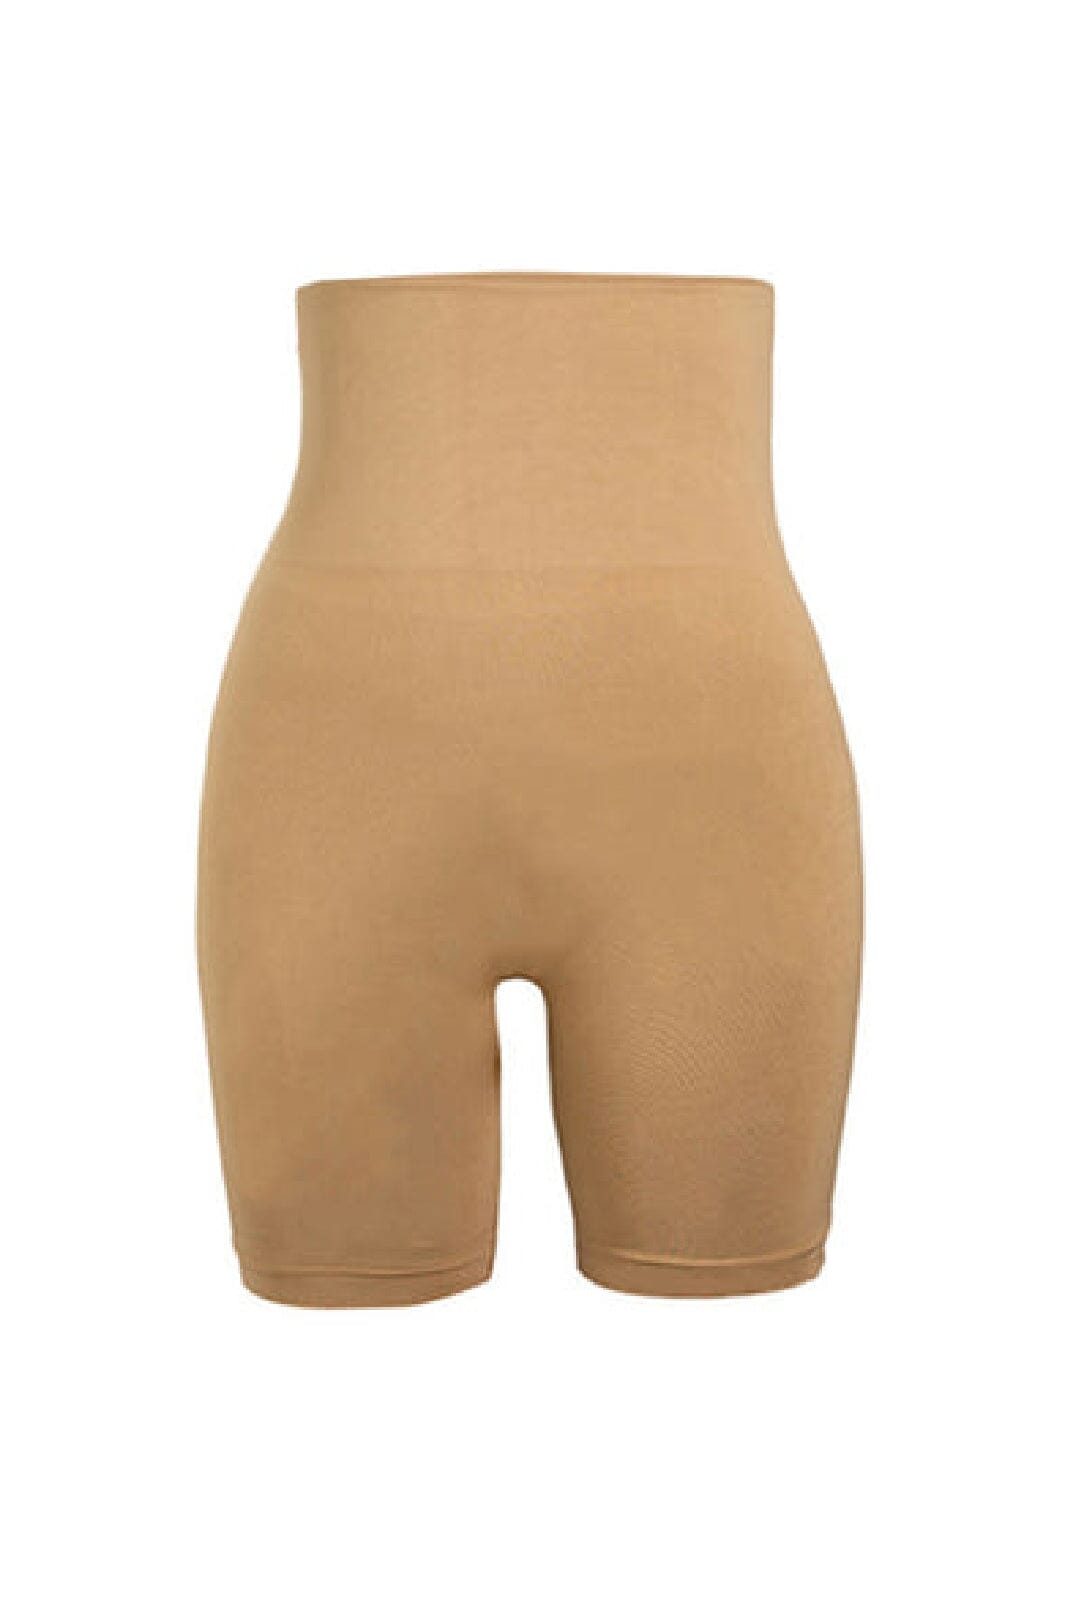 Soft basic - Soffi High shorts 2 pak - nude Shorts 